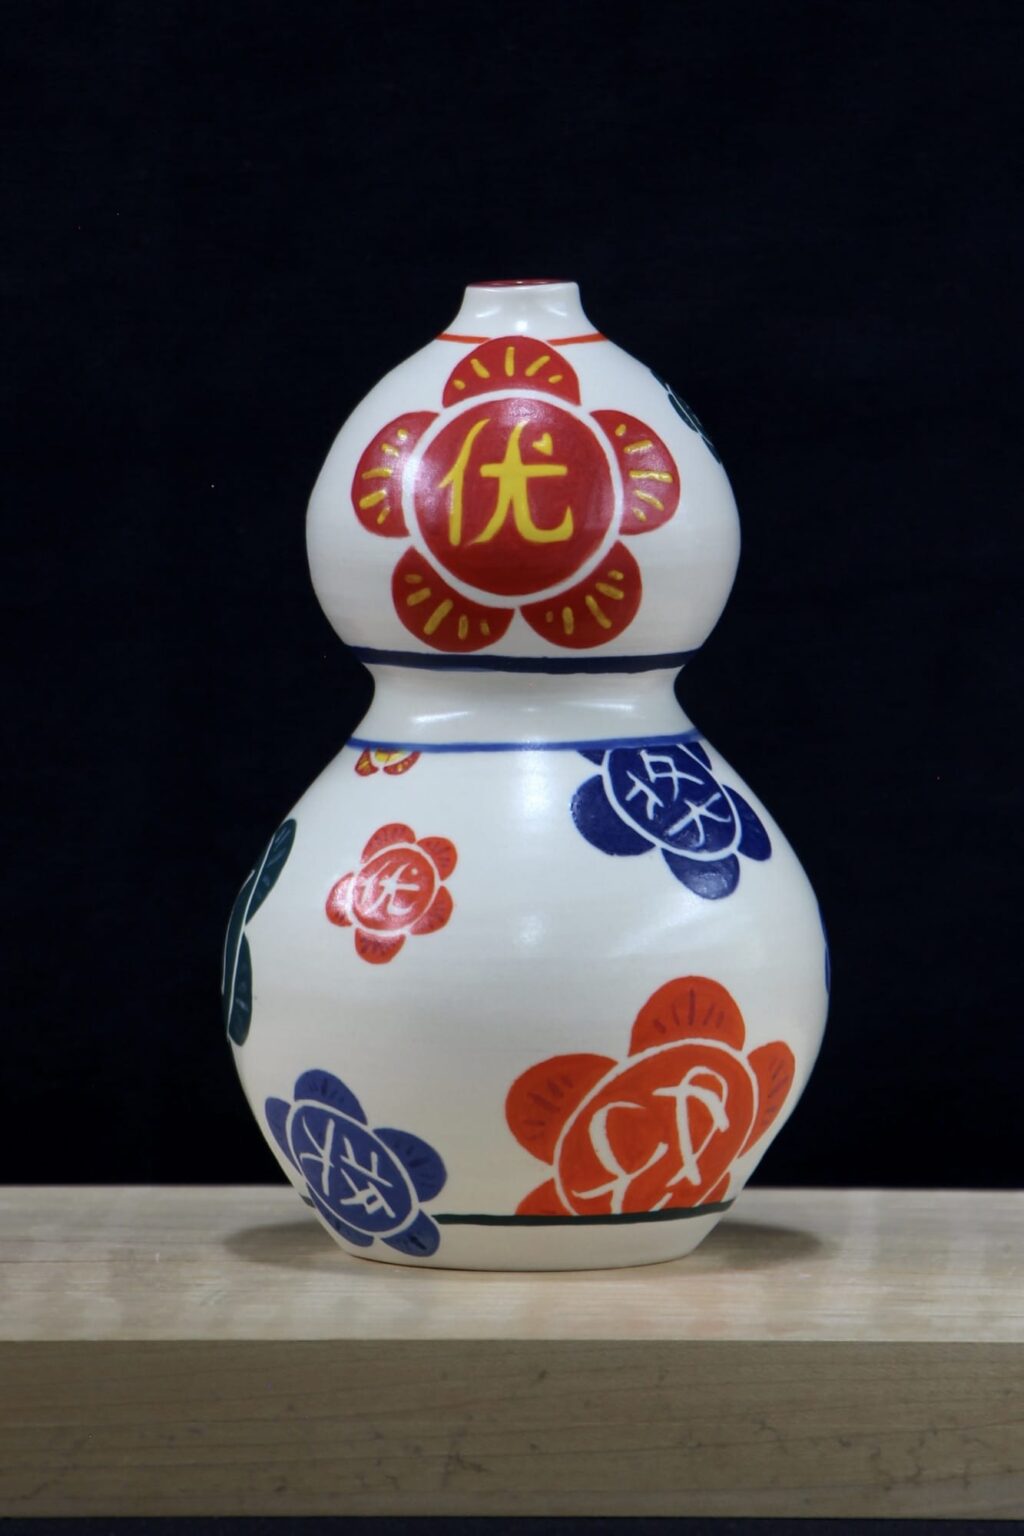 Sophia Li's ceramic gourd